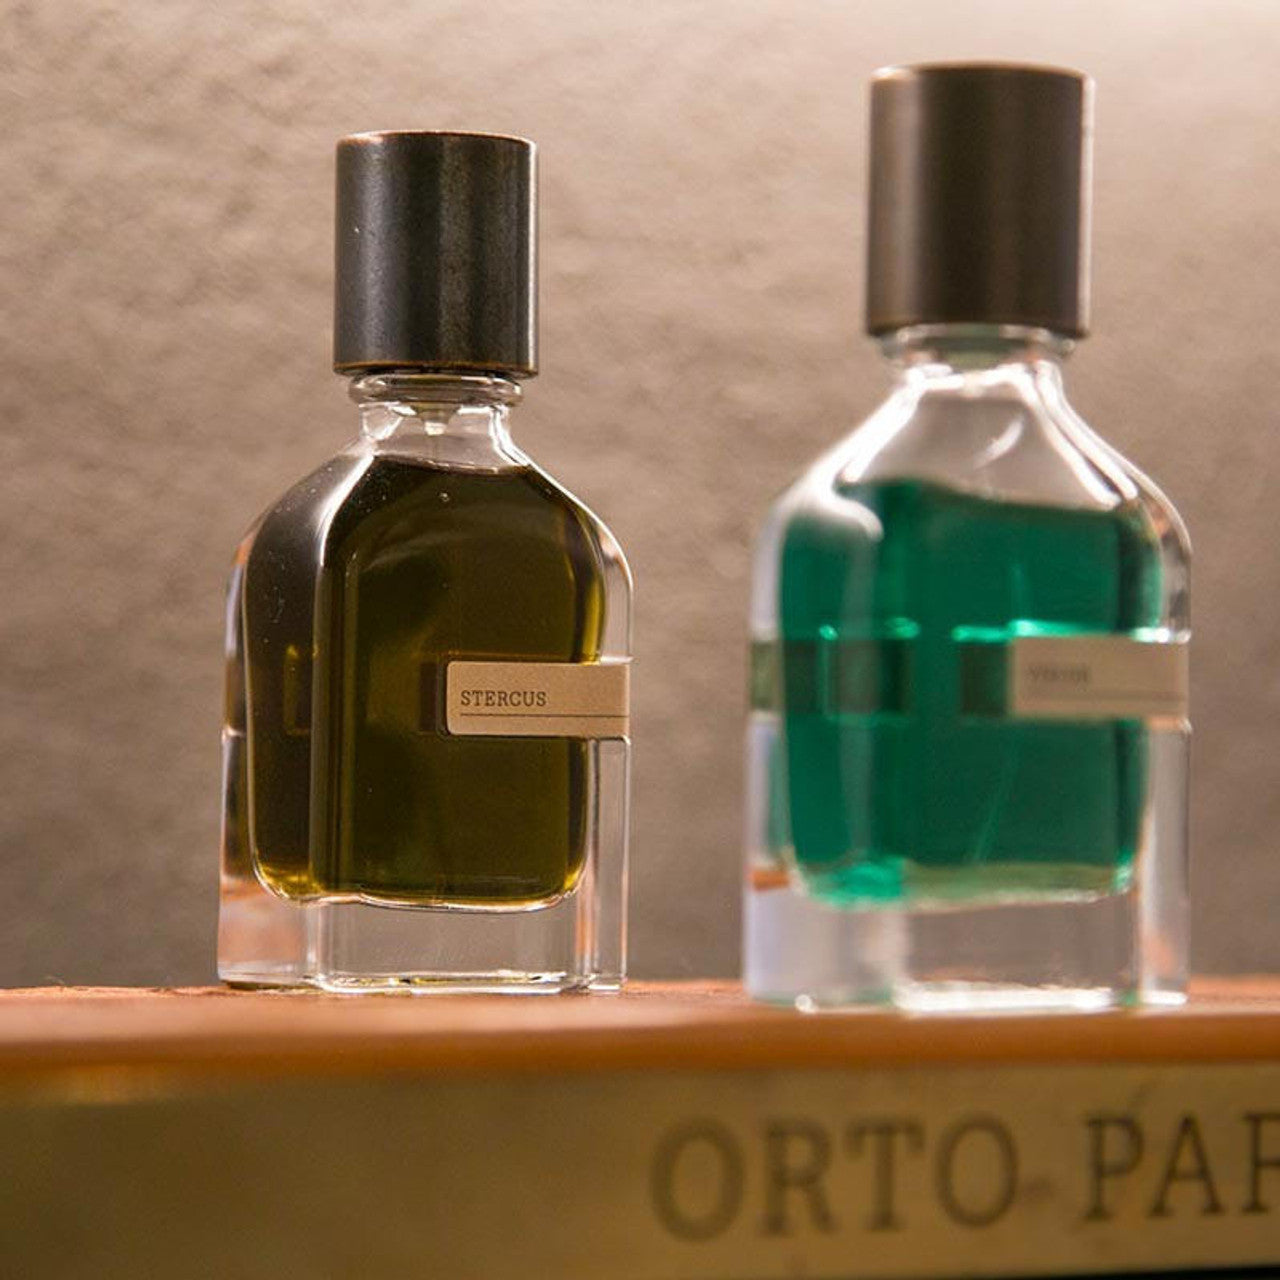 ORTO PARISI STERCUS Eau De Parfum 50 ML